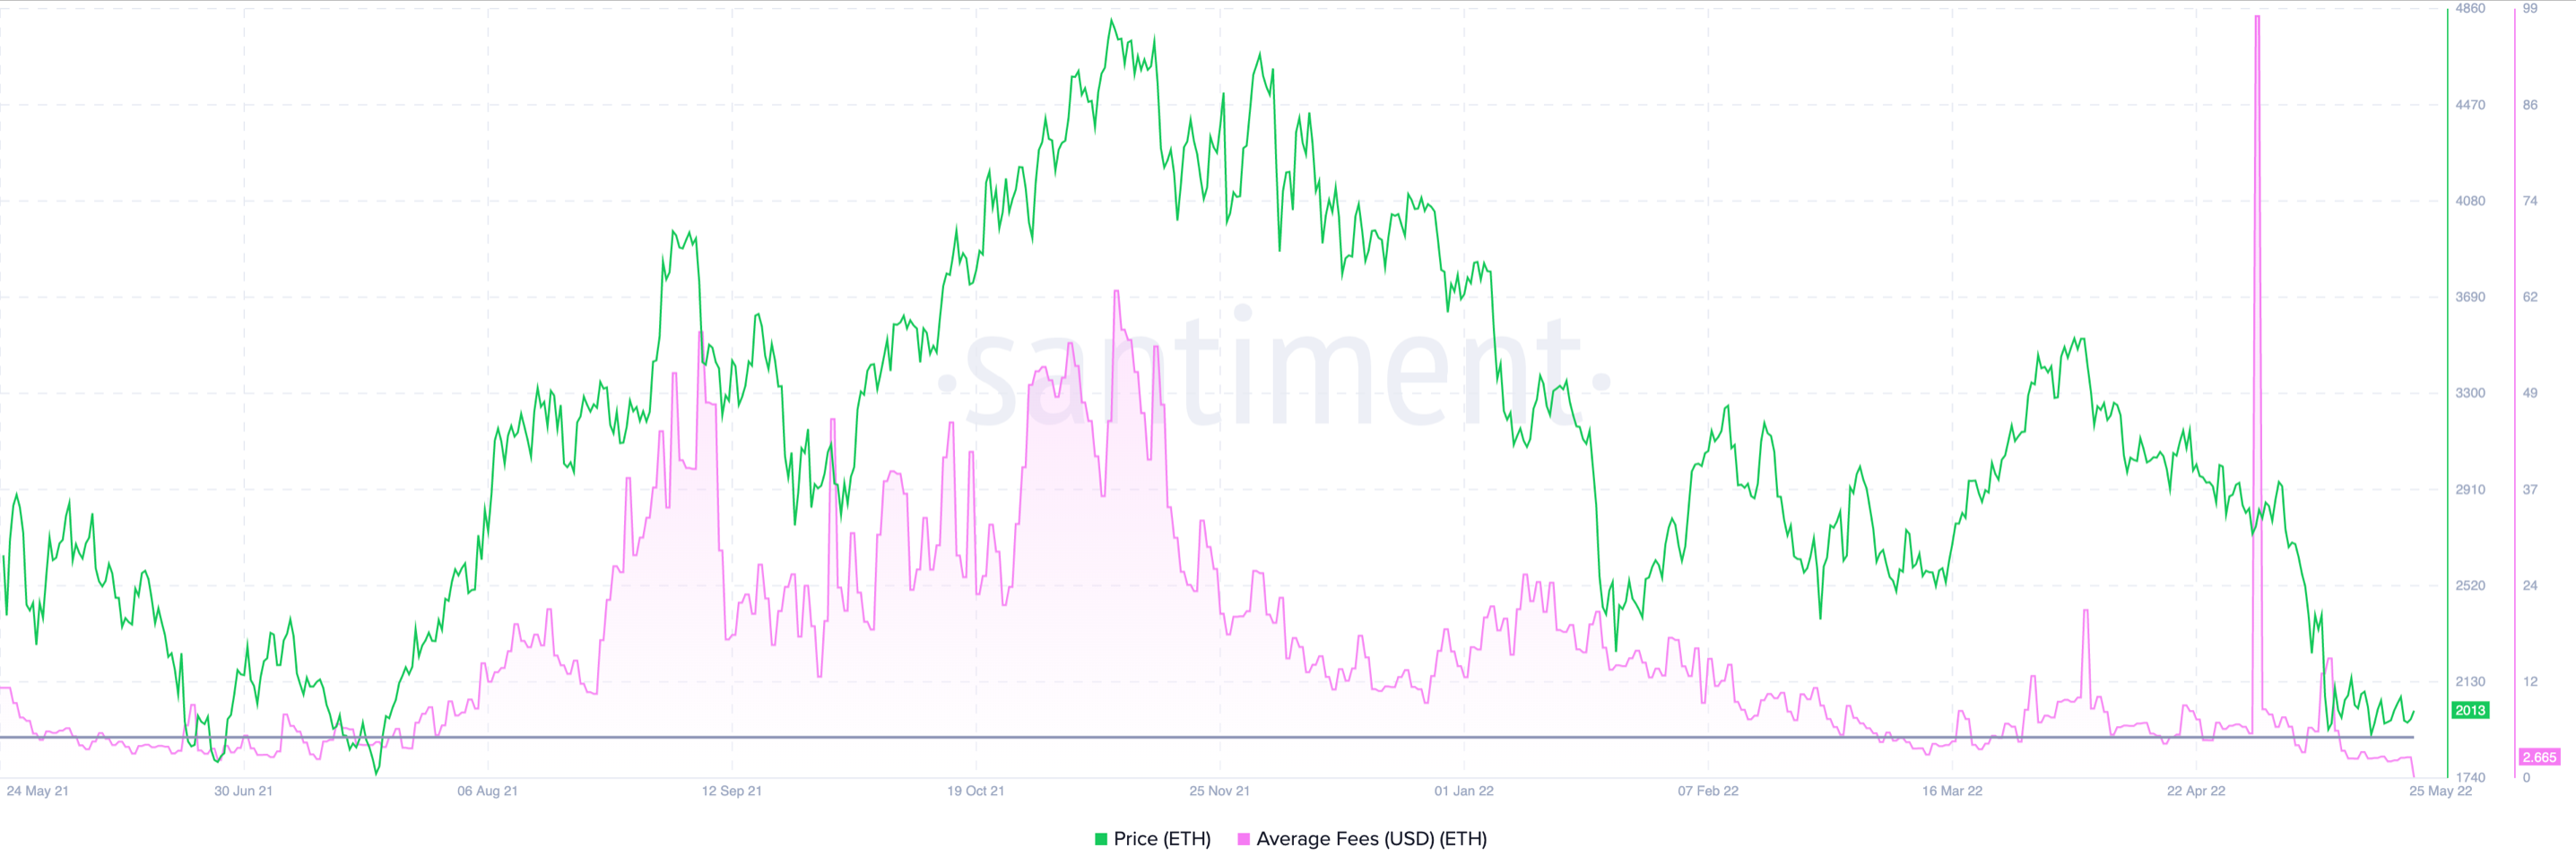 ¿Las bajas tarifas de gas de Ethereum ayudarán a ETH a subir en el gráfico de precios?